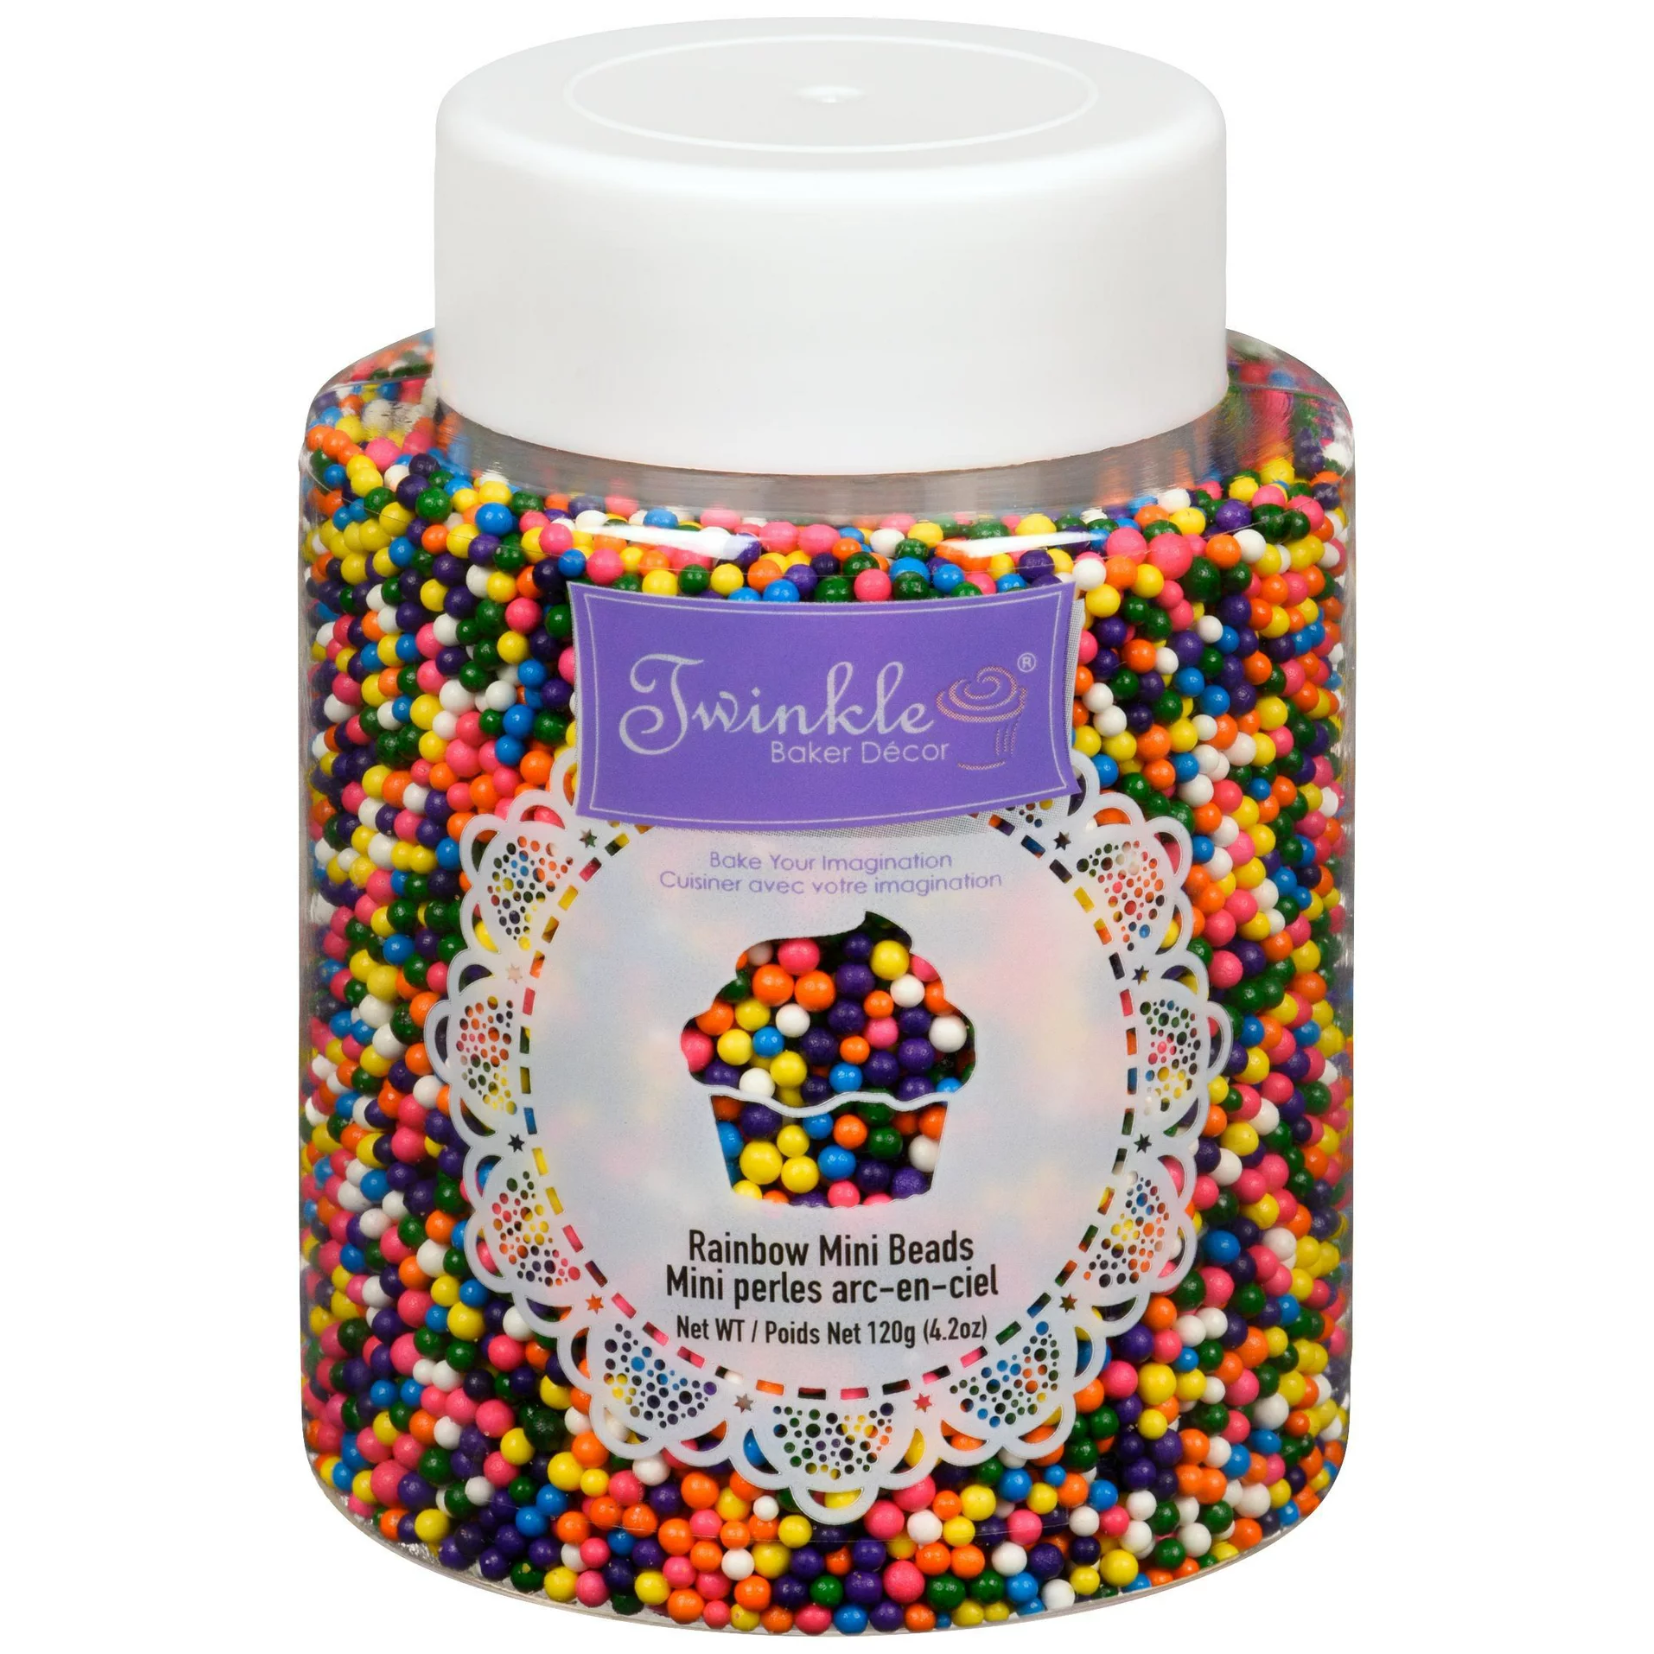 Twinkle Rainbow Sprinkles 120g